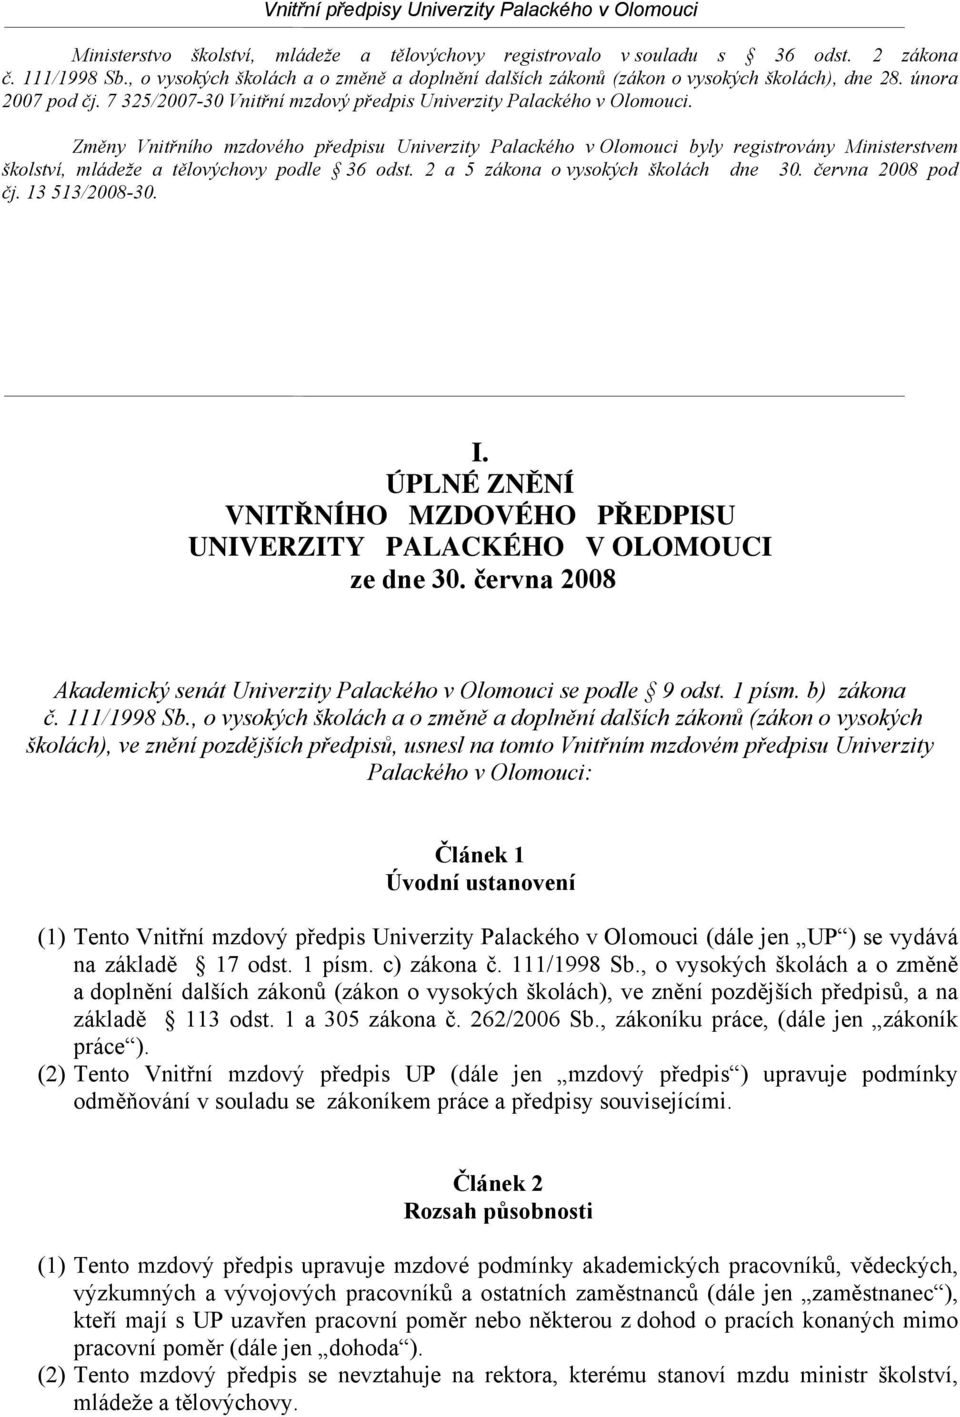 Změny Vnitřního mzdového předpisu Univerzity Palackého v Olomouci byly registrovány Ministerstvem školství, mládeže a tělovýchovy podle 36 odst. 2 a 5 zákona o vysokých školách dne 30.